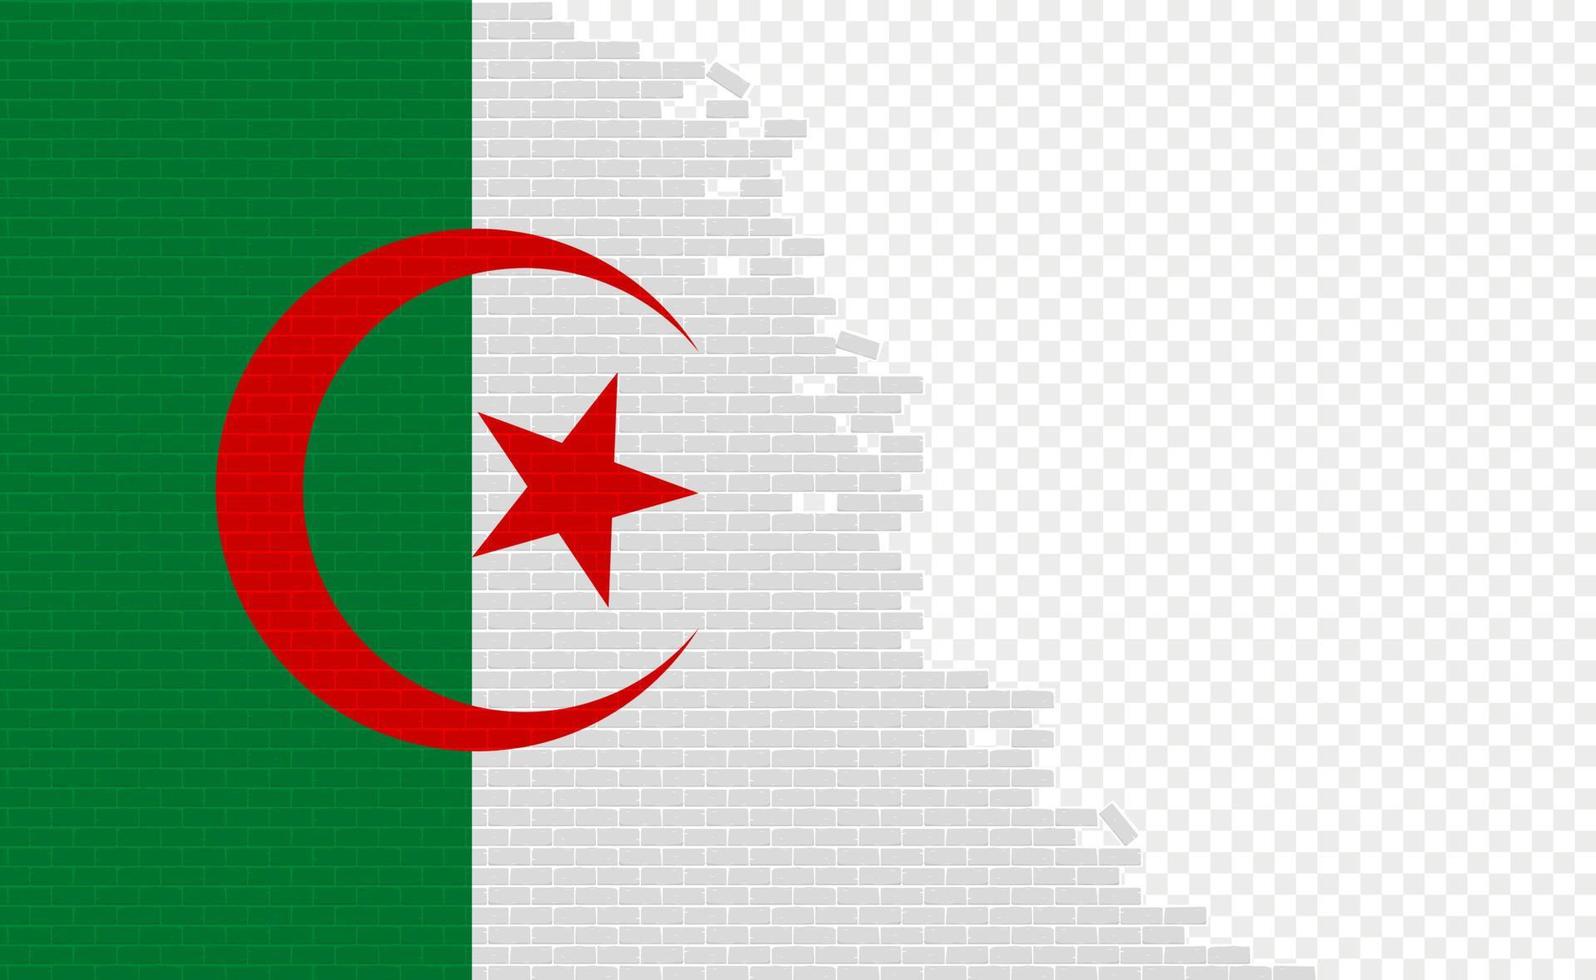 Algerien-Flagge auf gebrochener Ziegelwand. leeres Flaggenfeld eines anderen Landes. Ländervergleich. einfache Bearbeitung und Vektor in Gruppen.